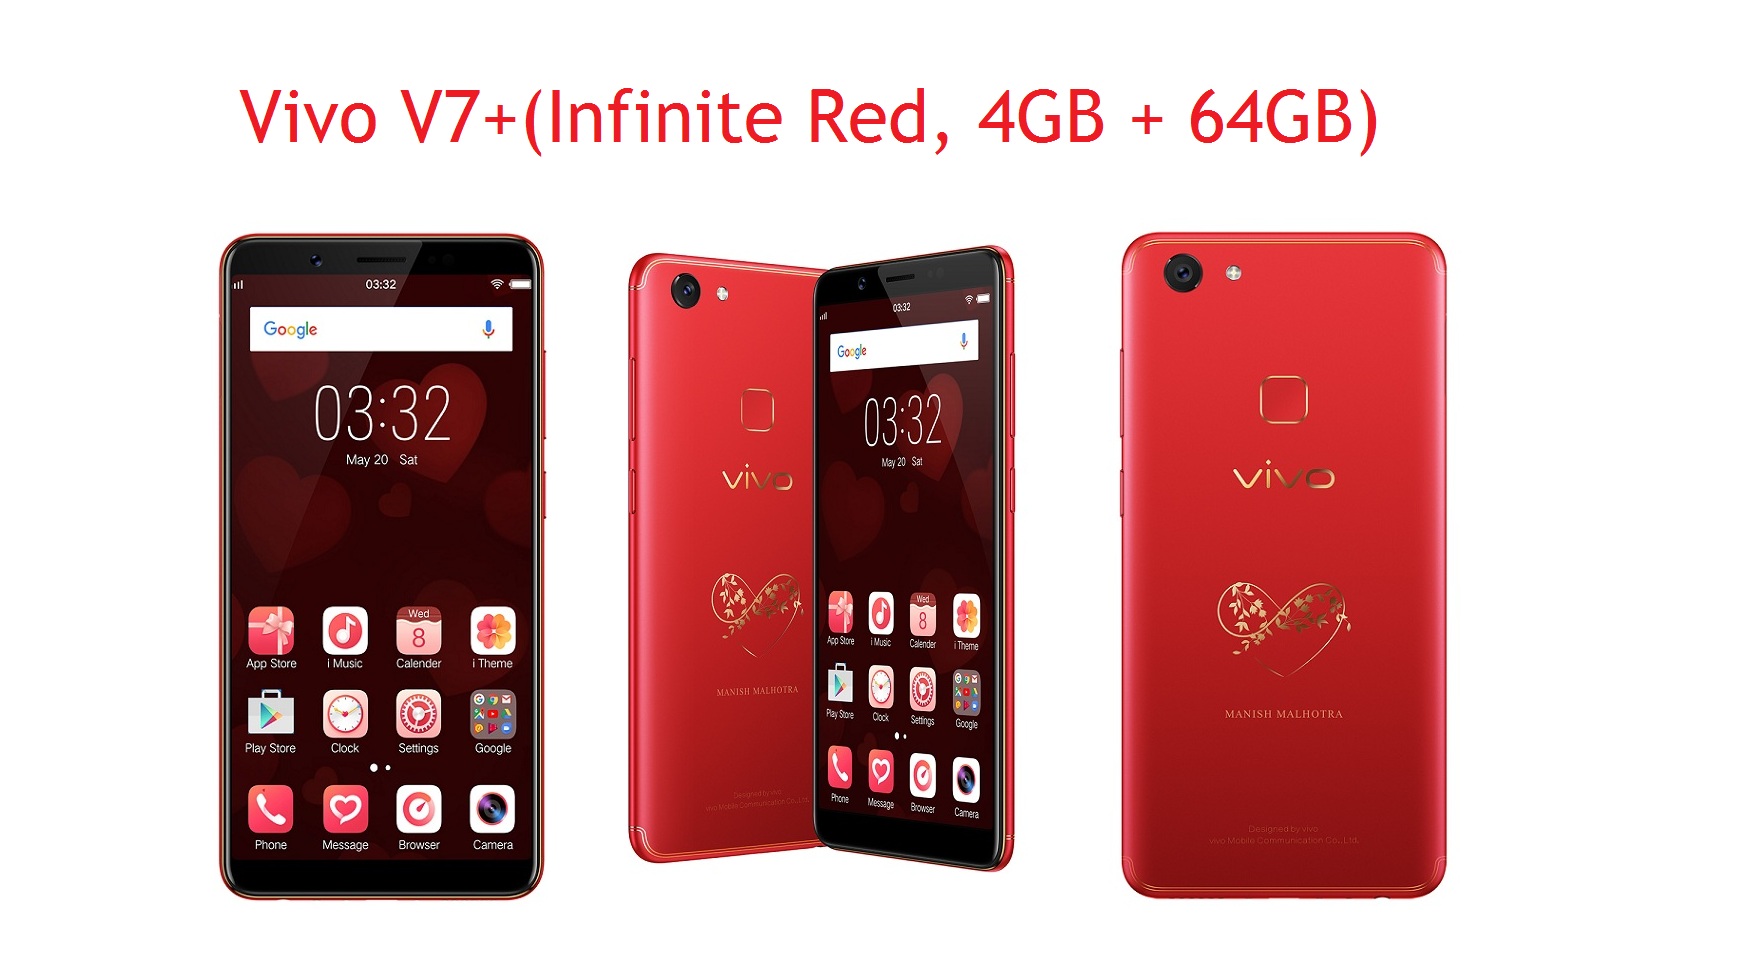 Vivo V7+(Infinite Red, 4GB + 64GB)